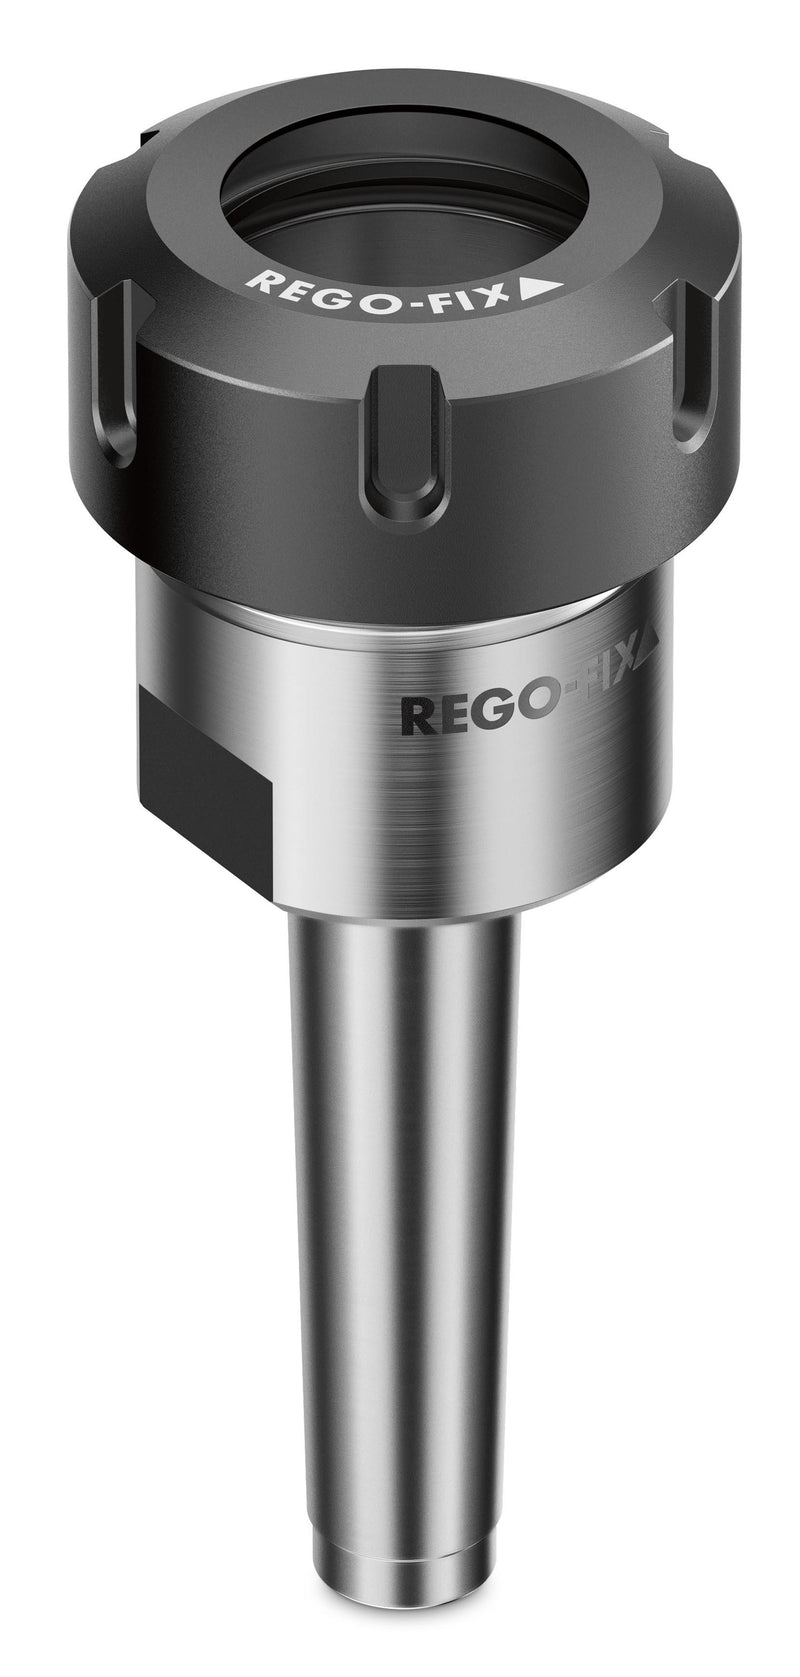 Rego-Fix MK 2 / ER 25 x 052 Tool Holder 2702.12500 (0646058)